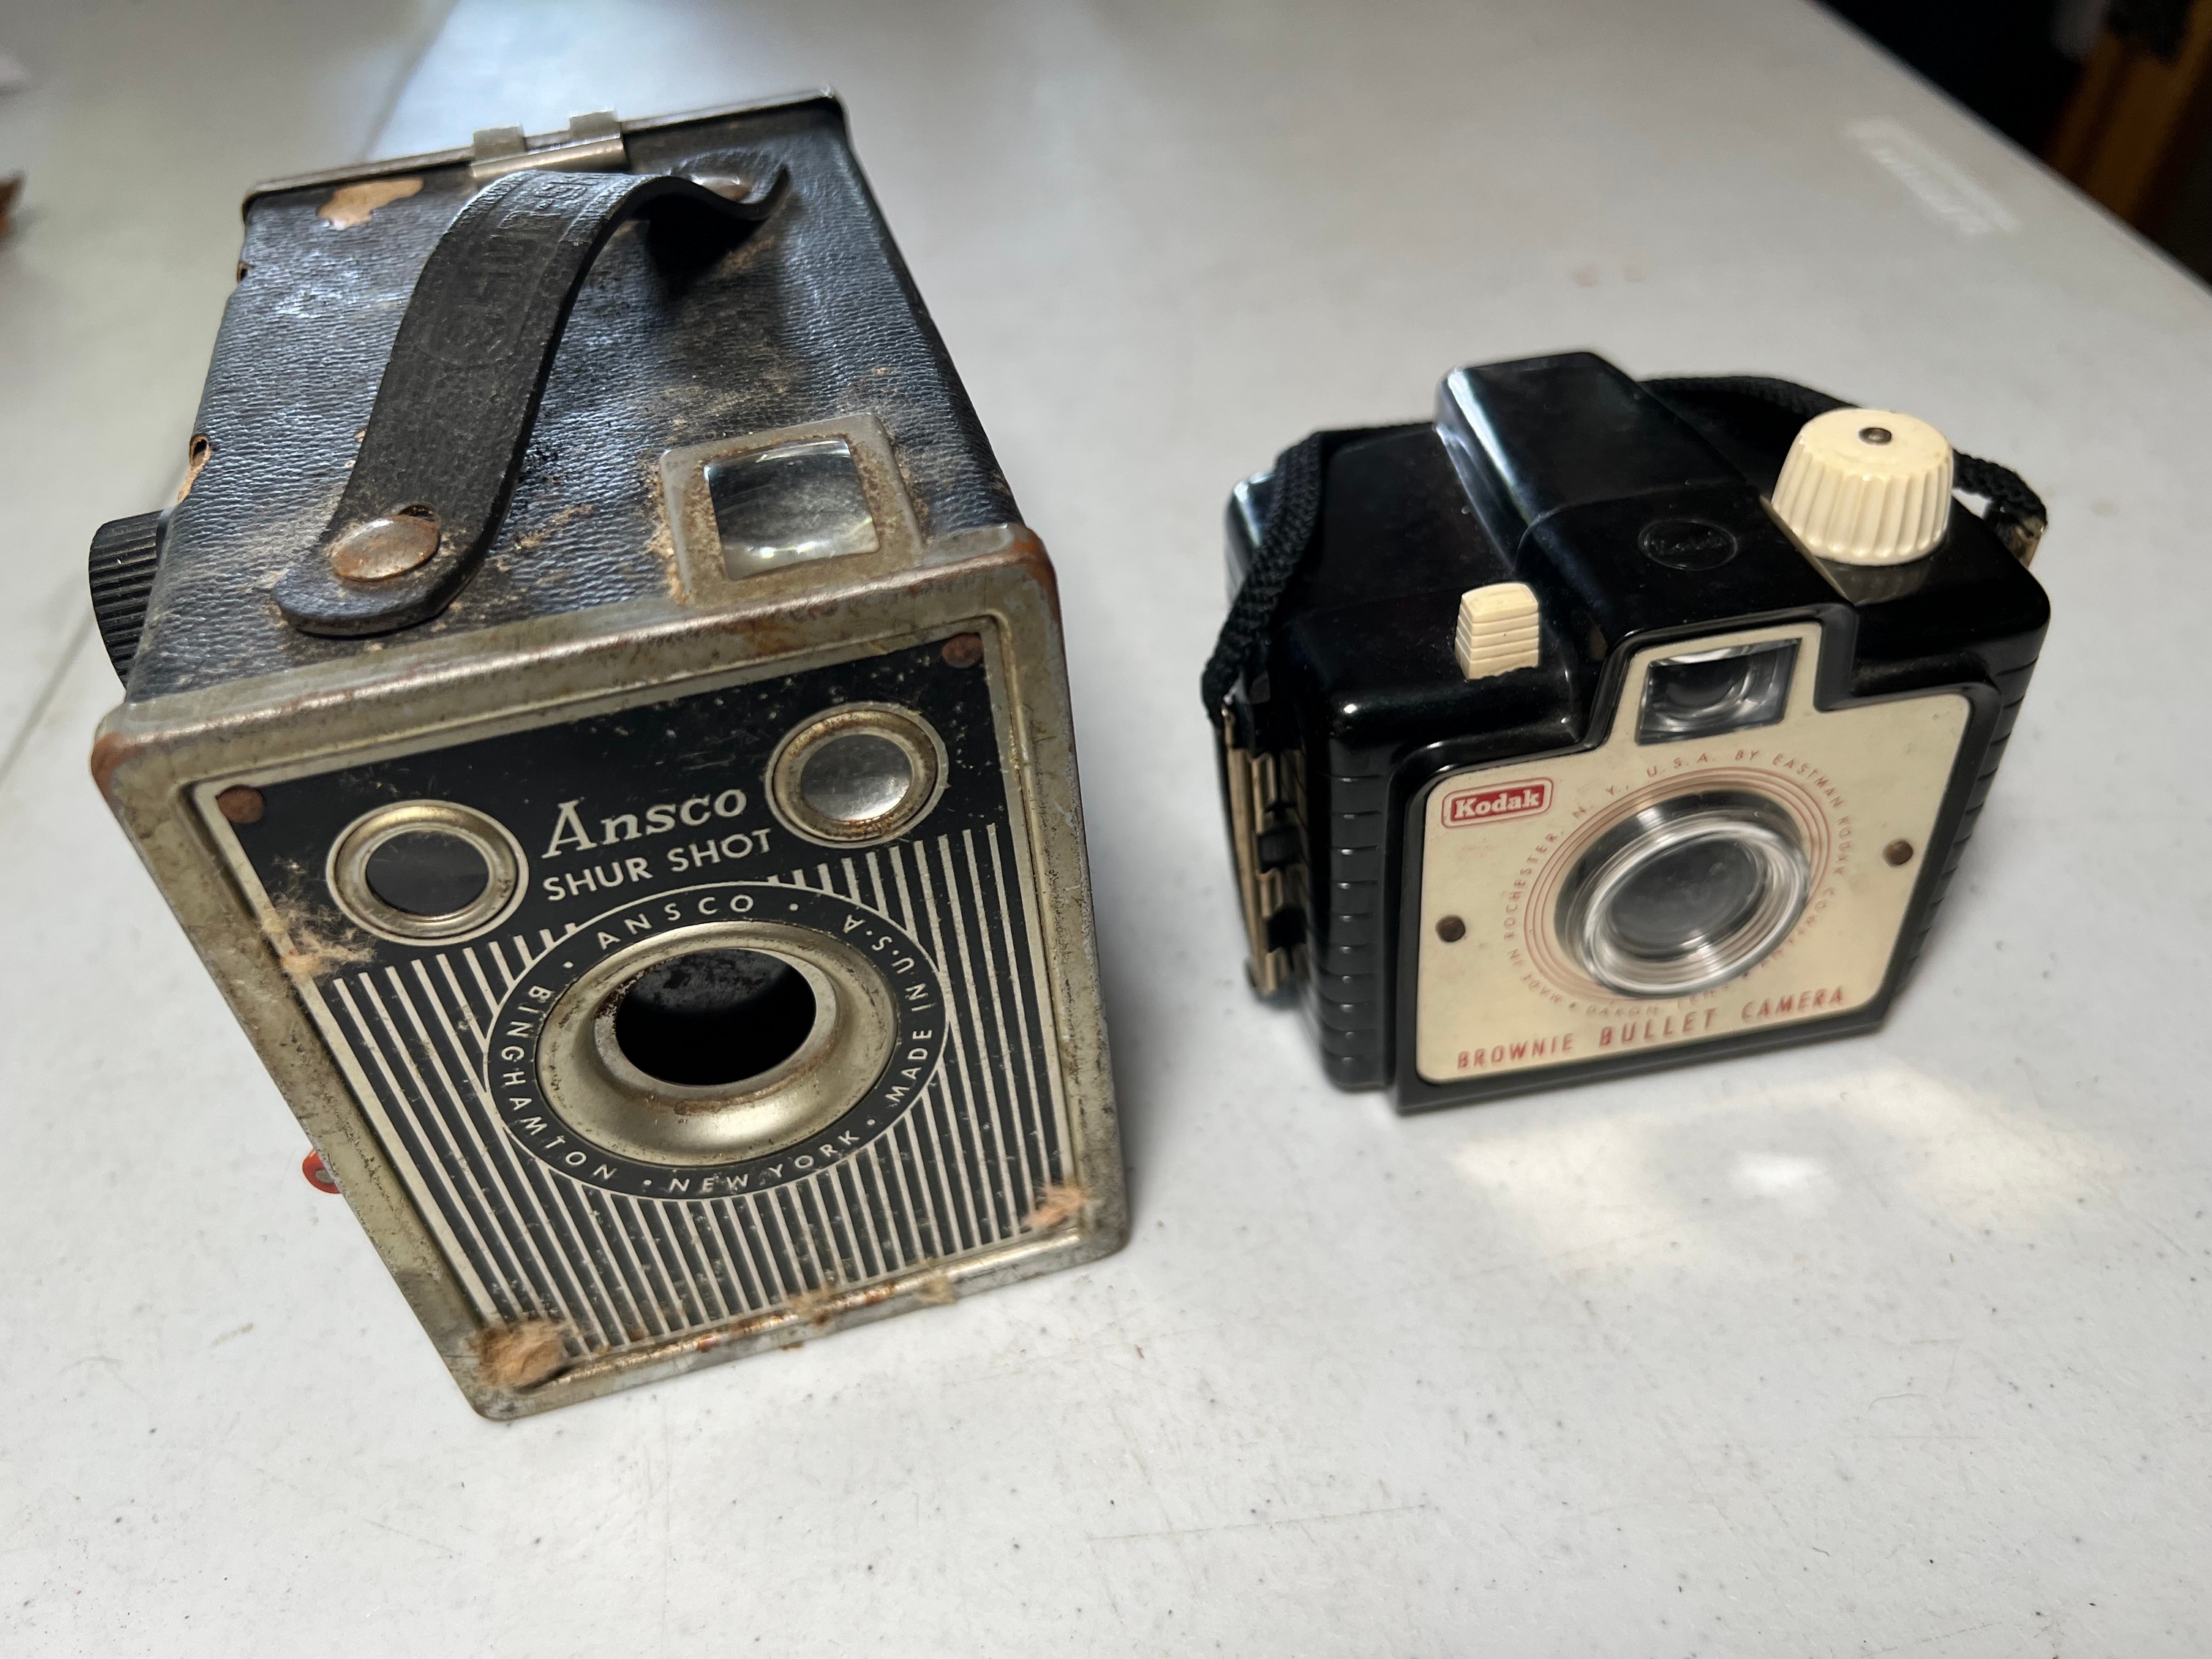 Cámara vintage Kodak Brownie Bullet COMO NUEVA